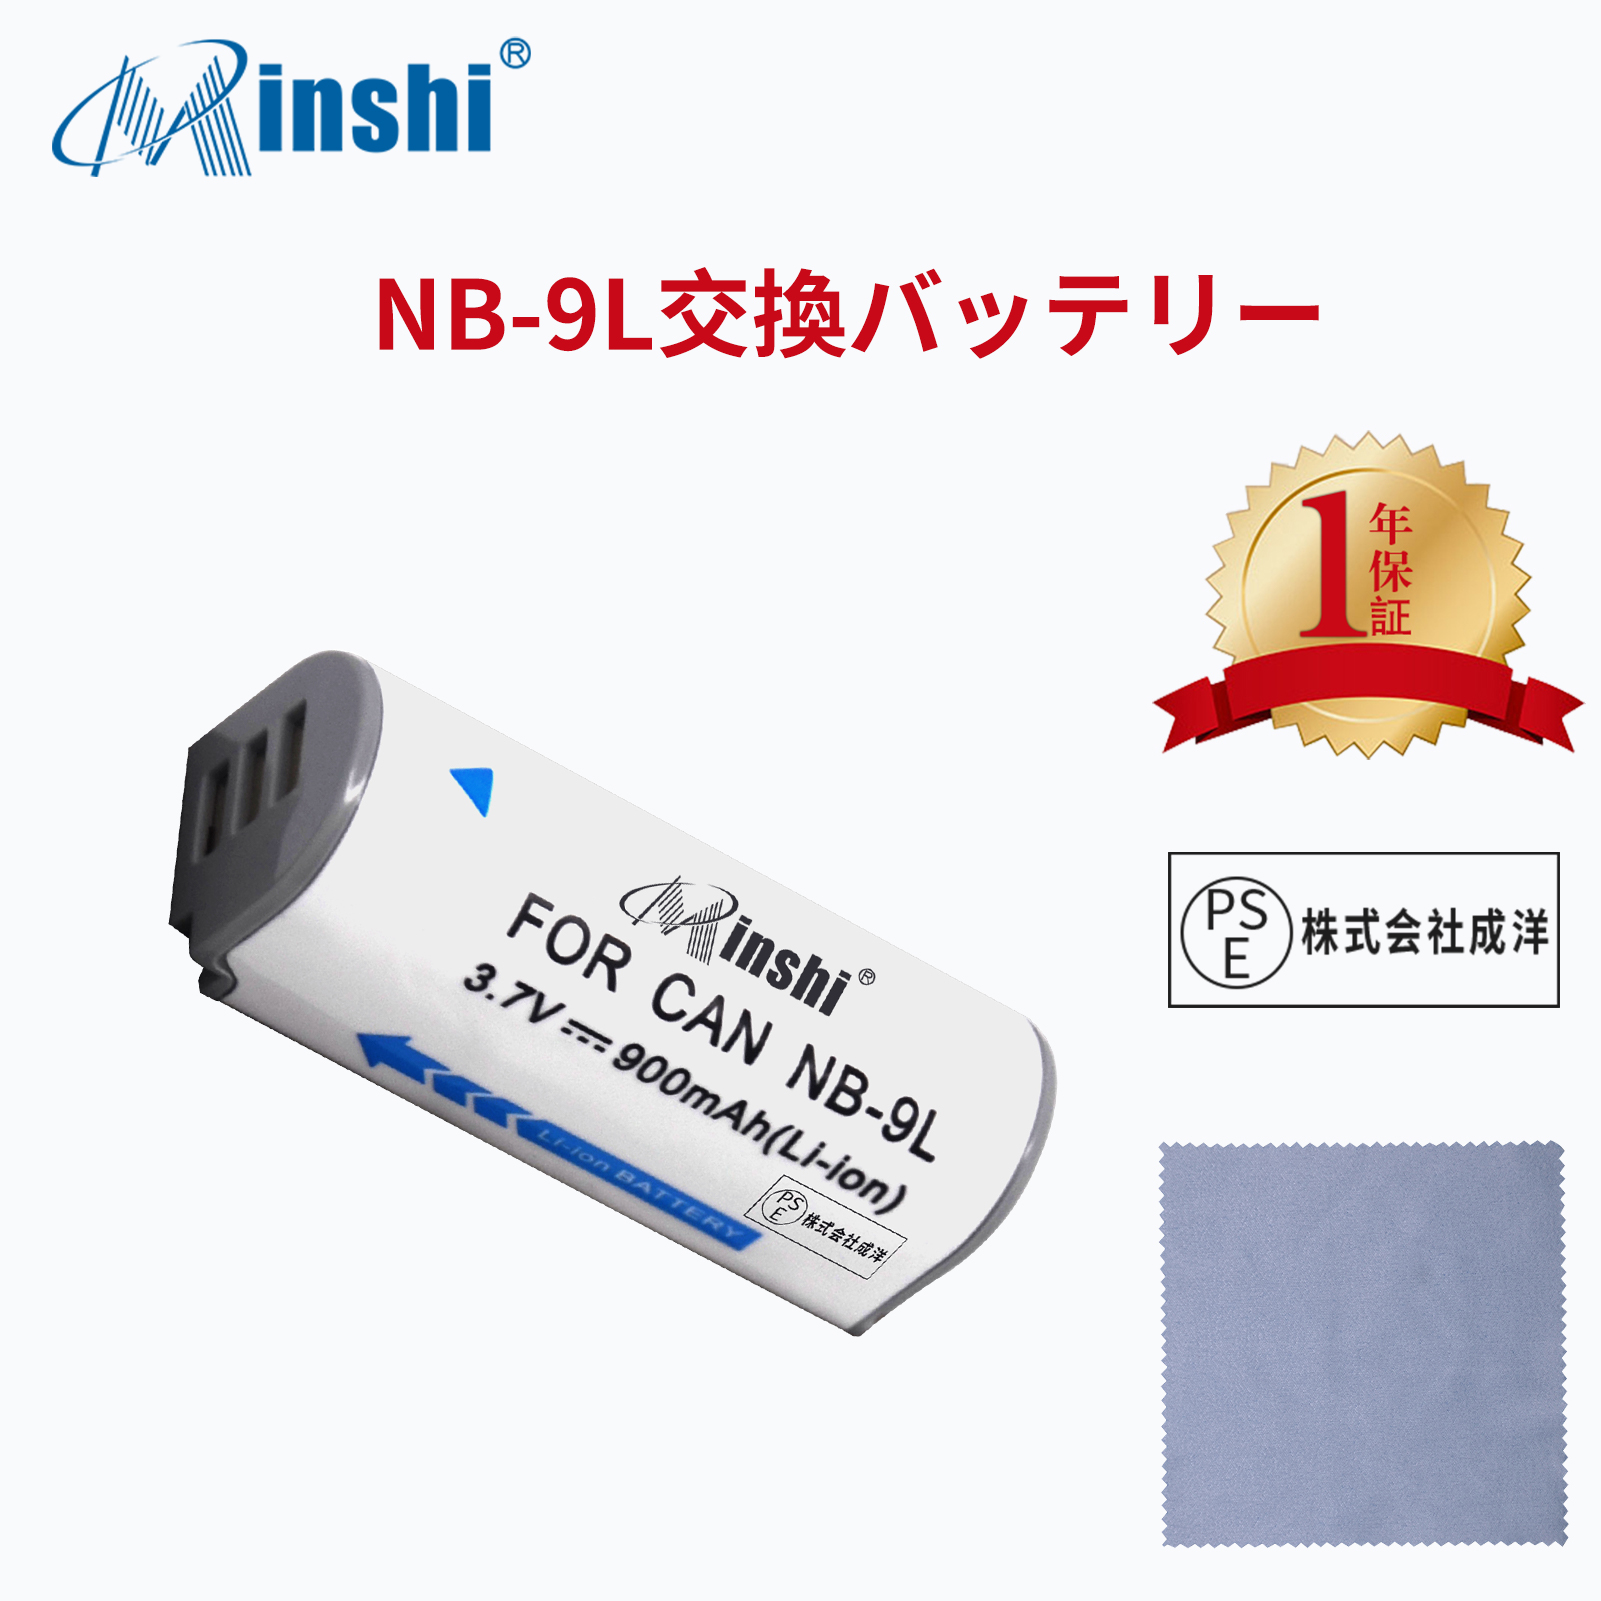 【清潔布ー付】minshi Panasonic NB-9L IXY 51S 【900mAh 3.7V】PSE認定済 高品質NB-9L交換用バッテリー